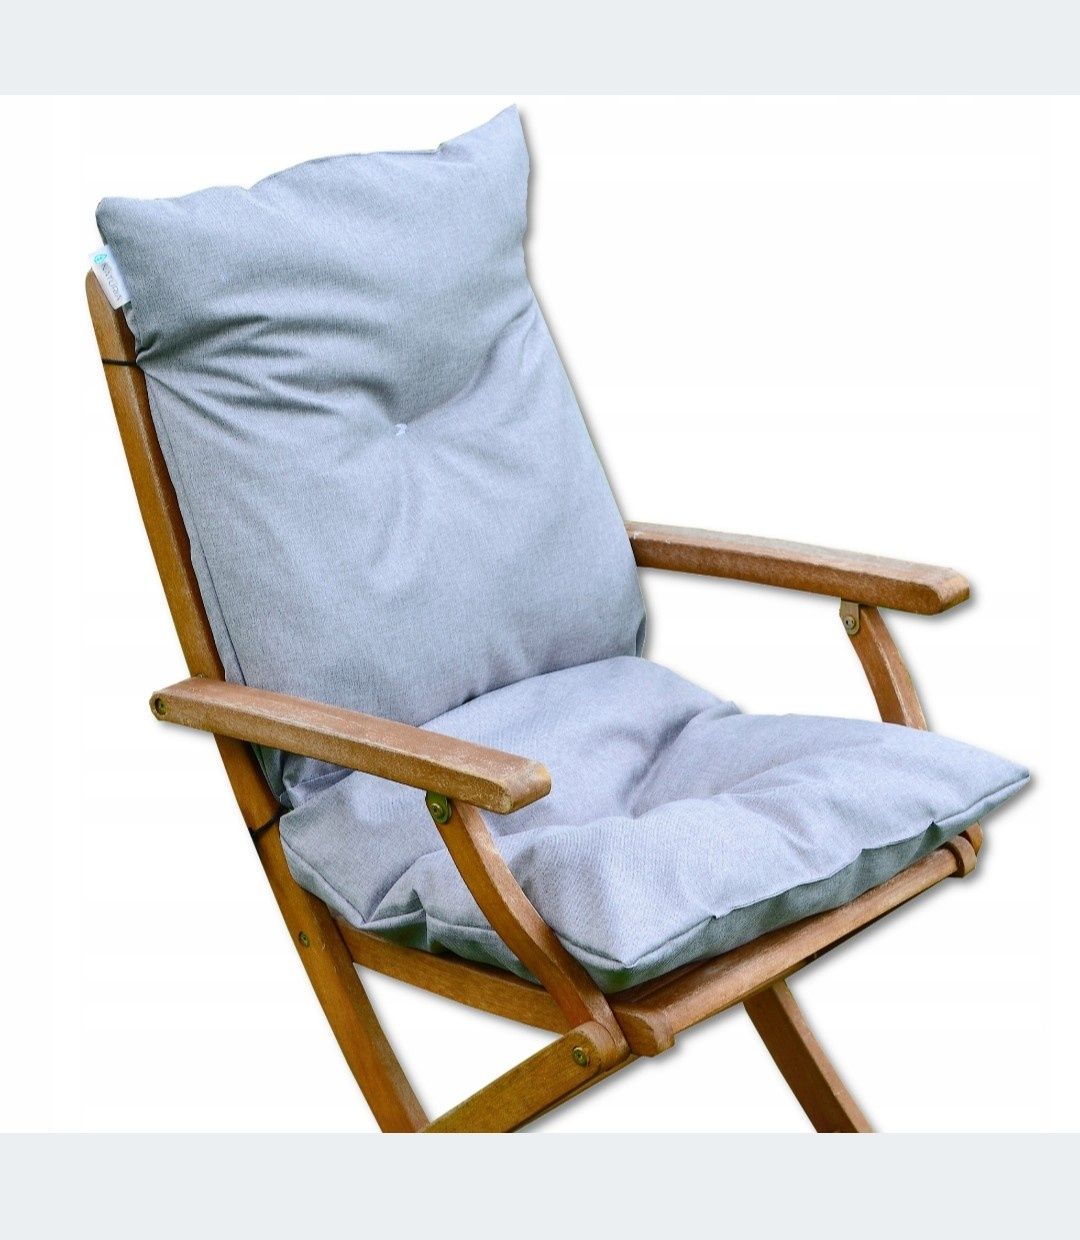 Poduszka na krzesło ogrodowe